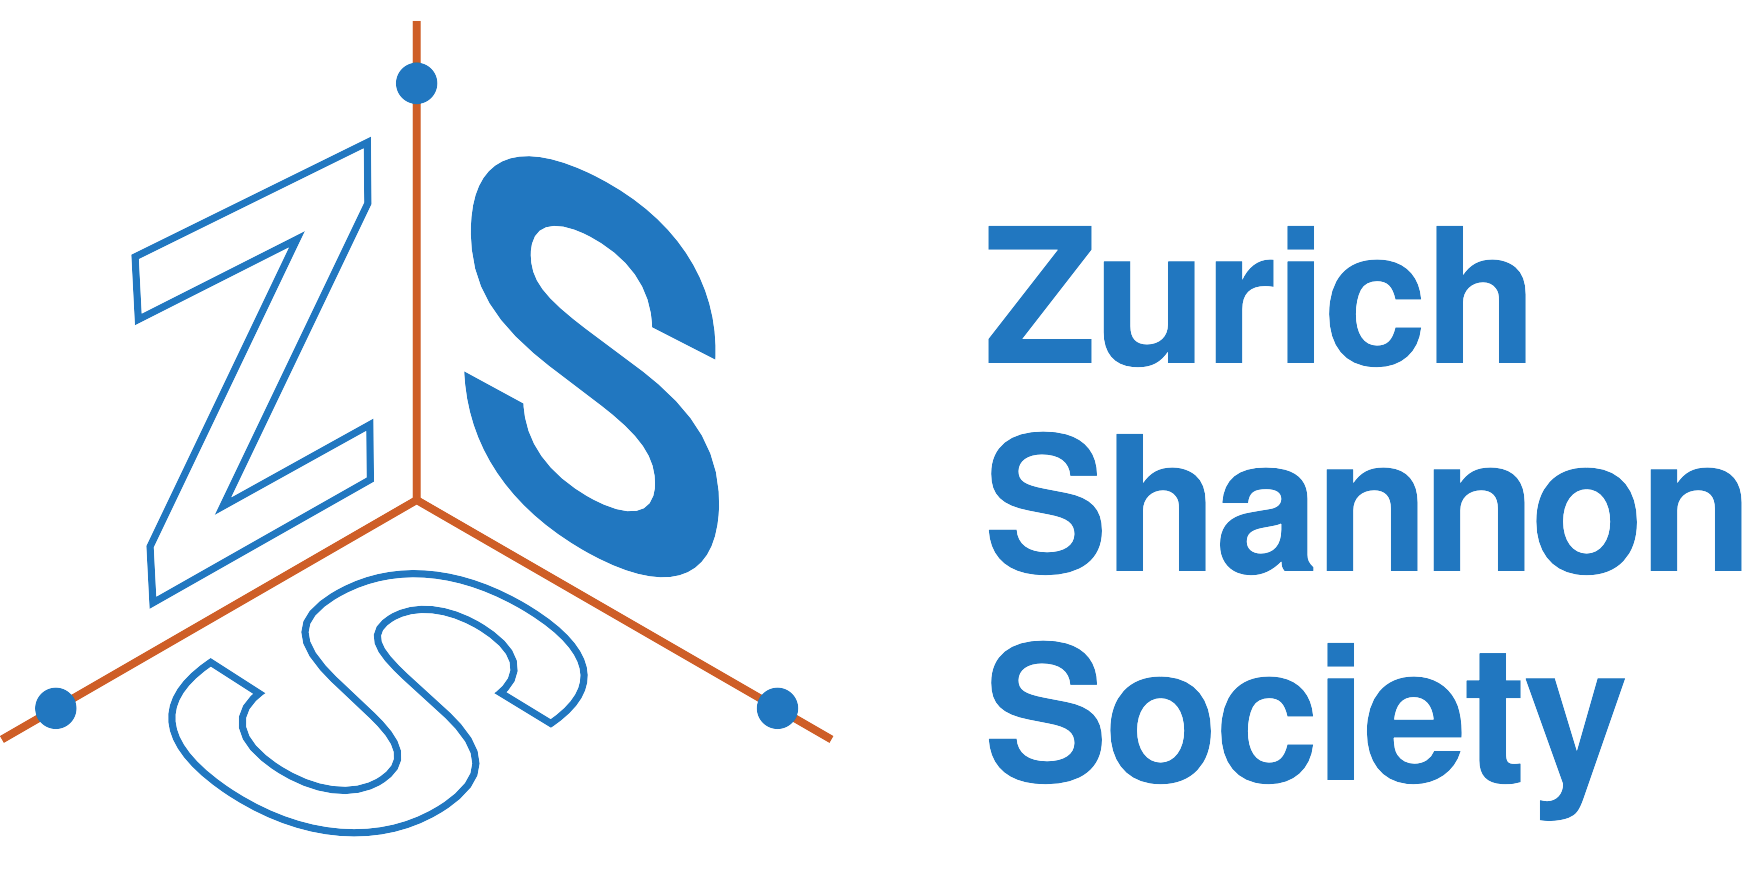 Zurich Shannon Society